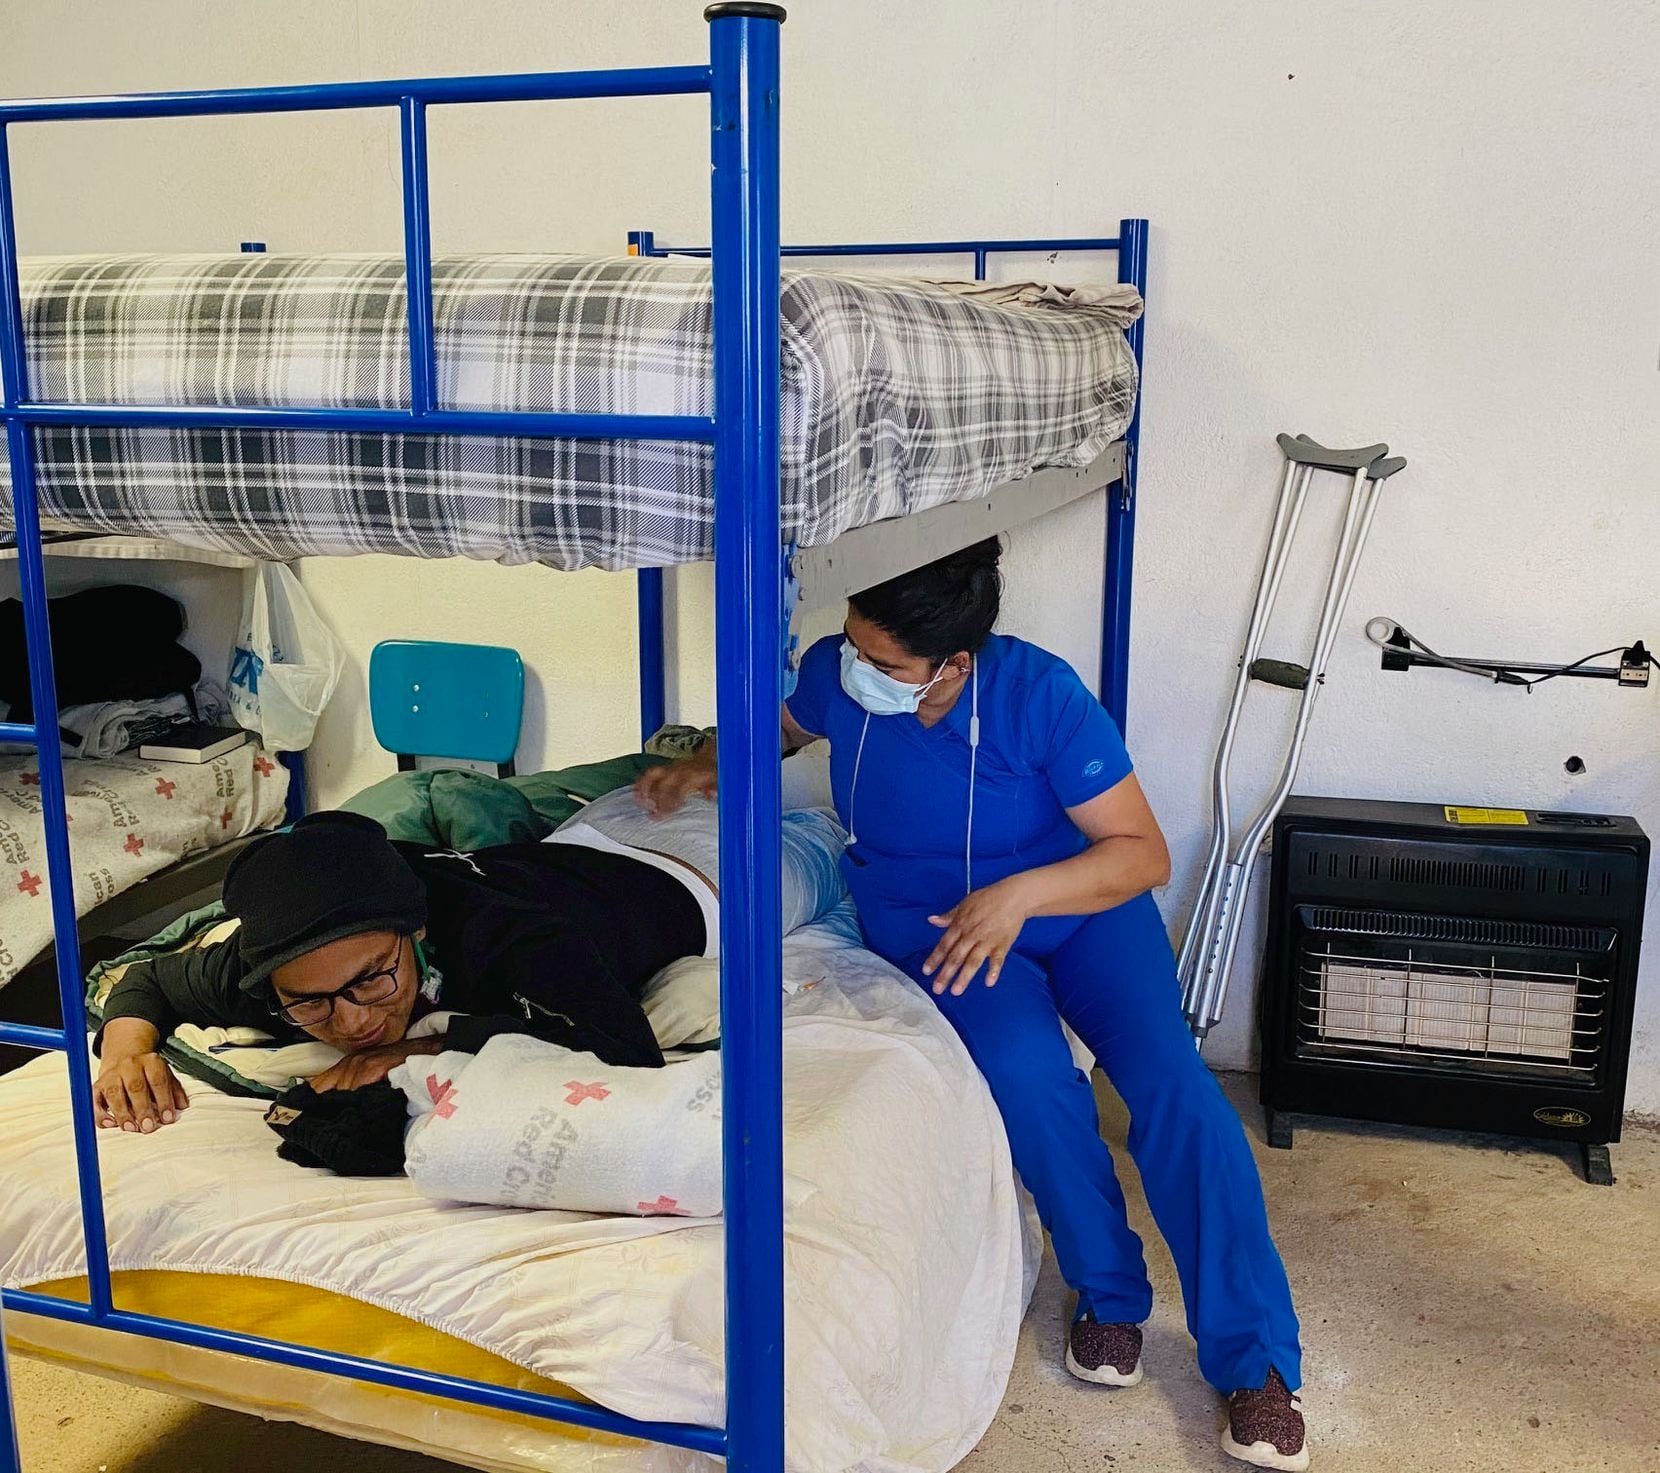 Jhon Jairo Ushca Alcoser está recibiendo tratamiento por una fractura en la espalda luego de caer 30 pies mientras trataba de escalar el muro delimitador.  Brenda Yazmin Nevarez, directora de servicios médicos y enfermera paramédica, le dio una inyección el miércoles para ayudar a aliviar el dolor.